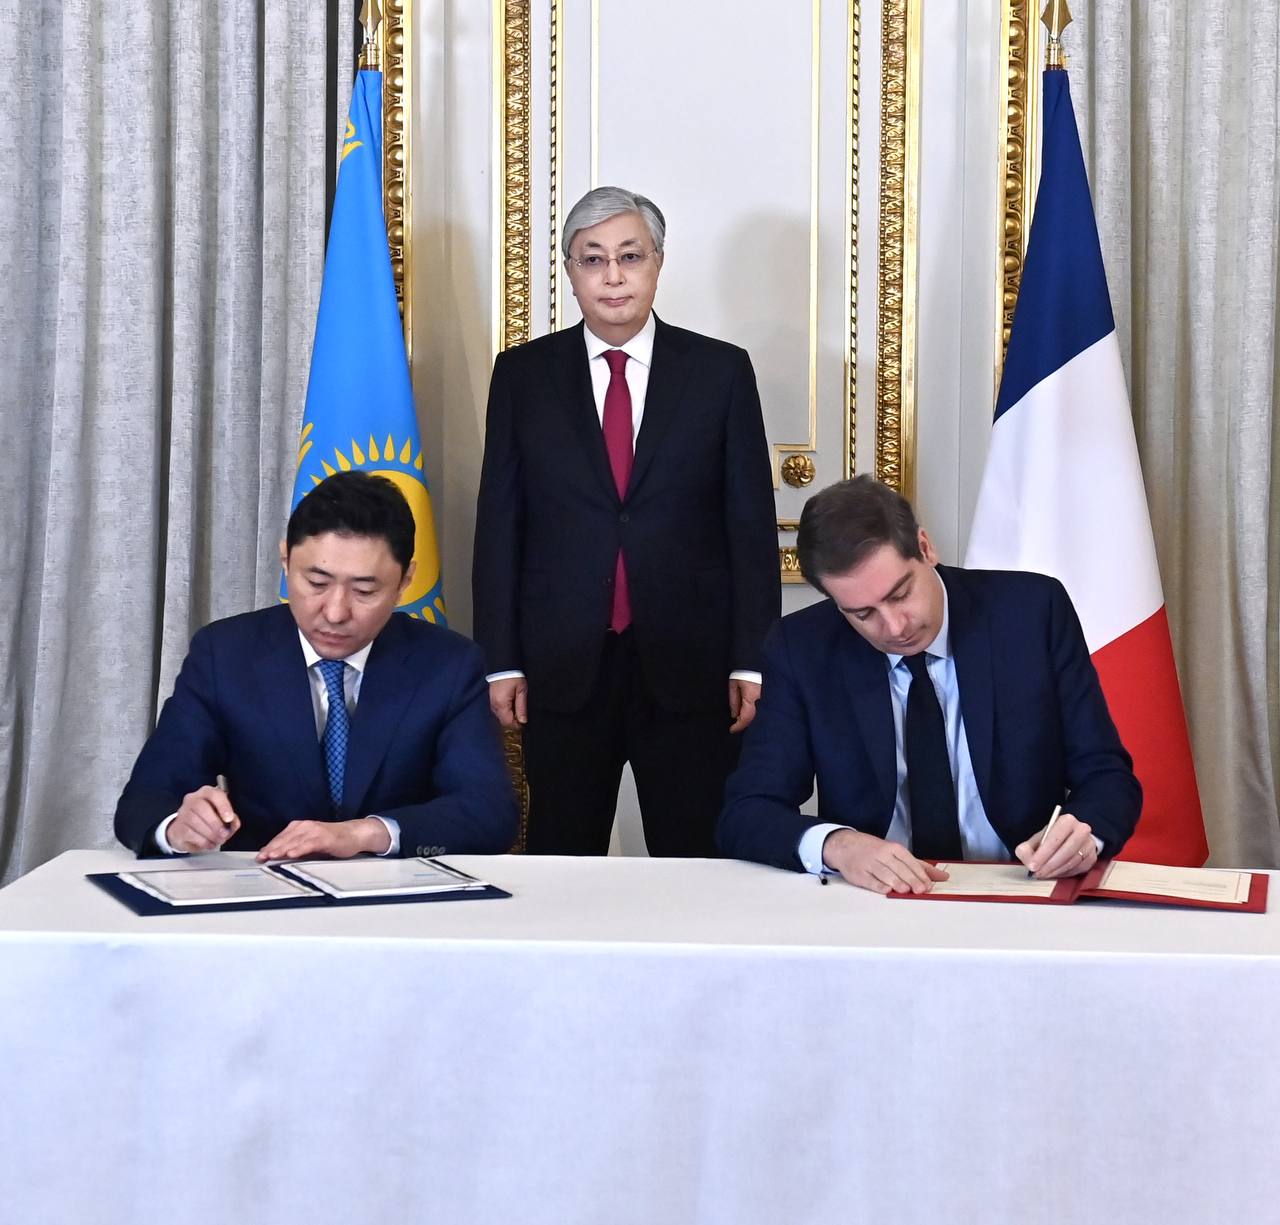 Правительством Республики Казахстан подписано Специальное соглашение с Правительством Французской Республики «О реализации сотрудничества в сфере борьбы с глобальным потеплением»